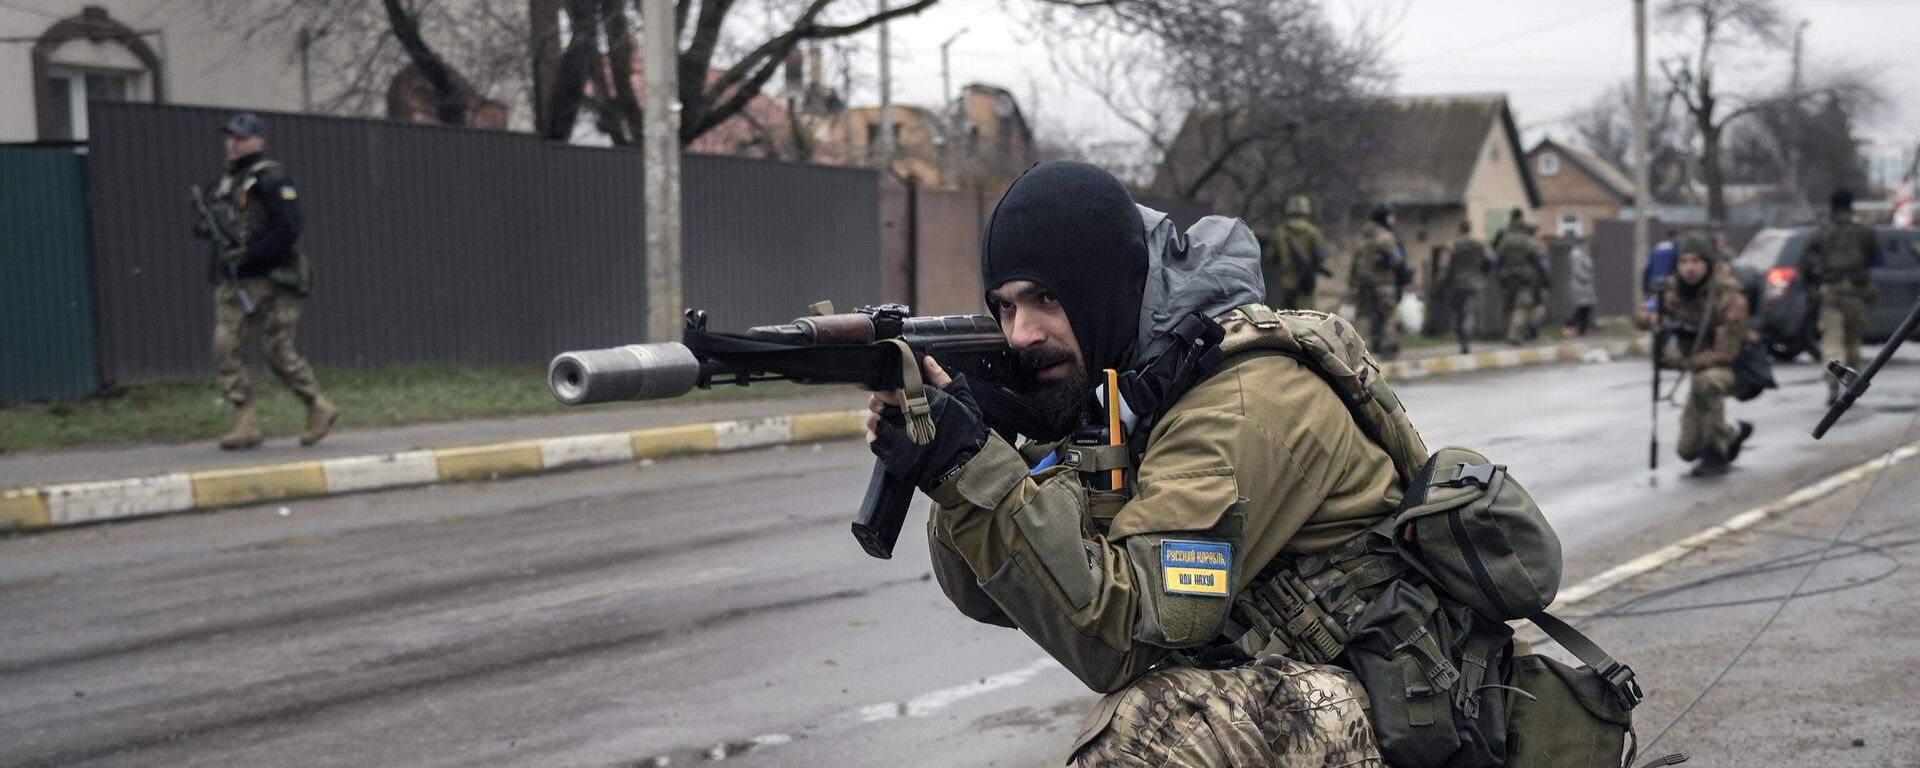 Украинские военнослужащие в пригороде Киева Буче, 2 апреля 2022 года - Sputnik Latvija, 1920, 28.04.2022